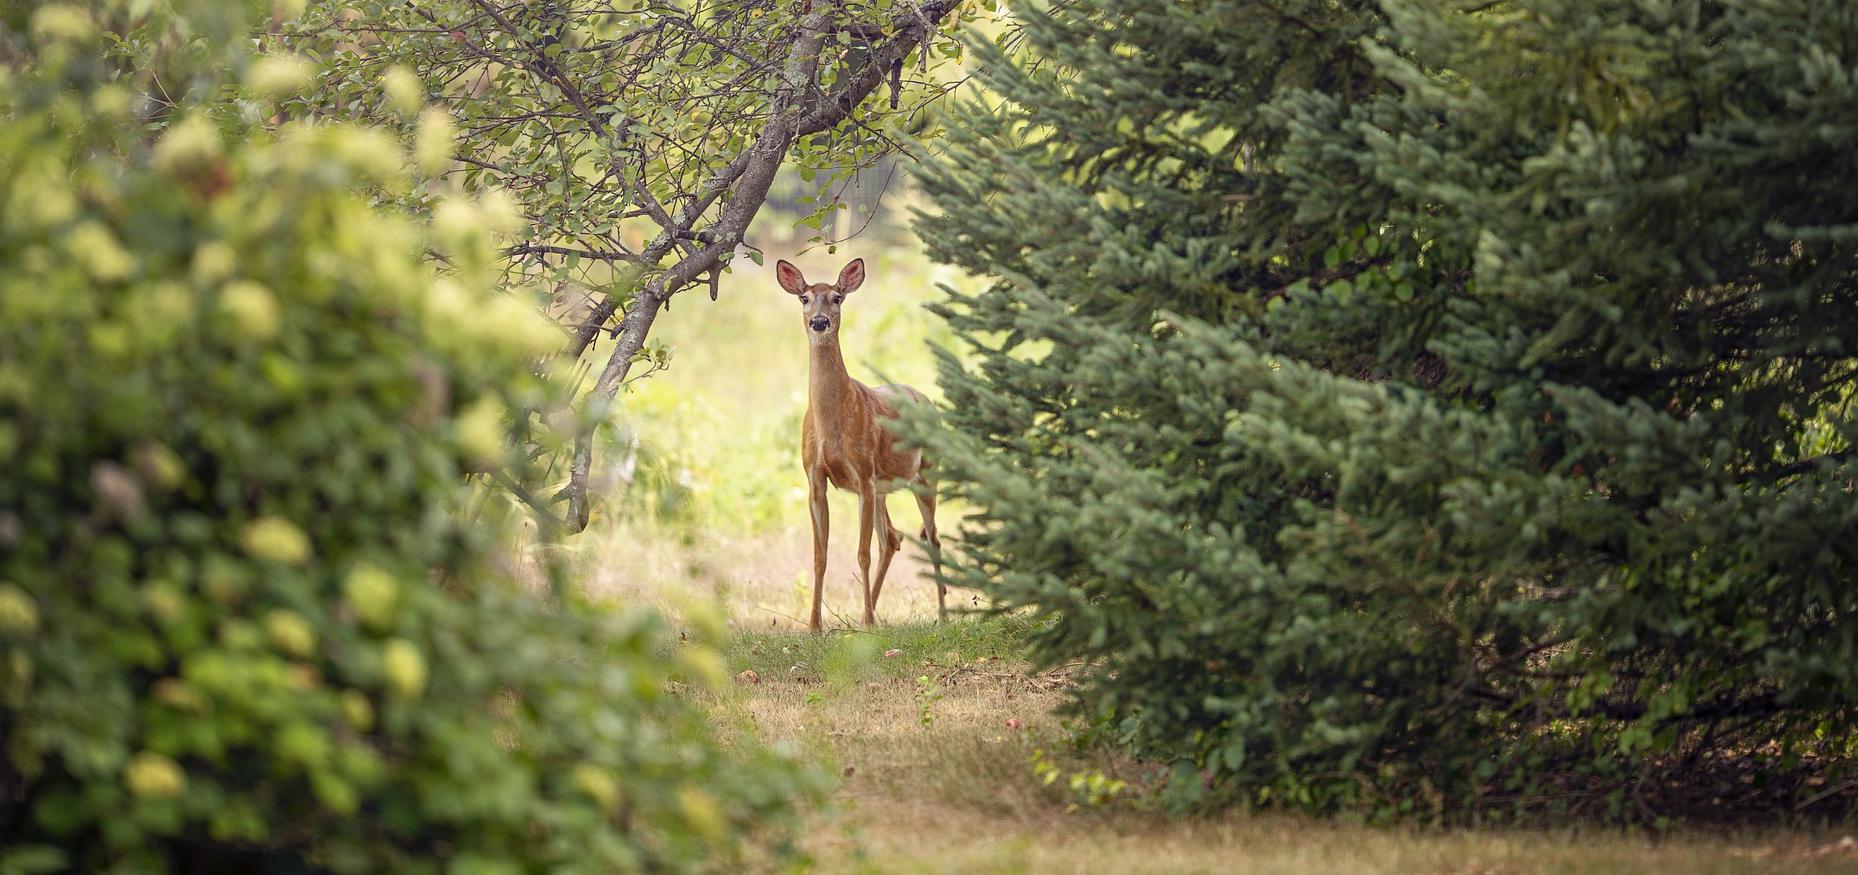 deer peering through trees